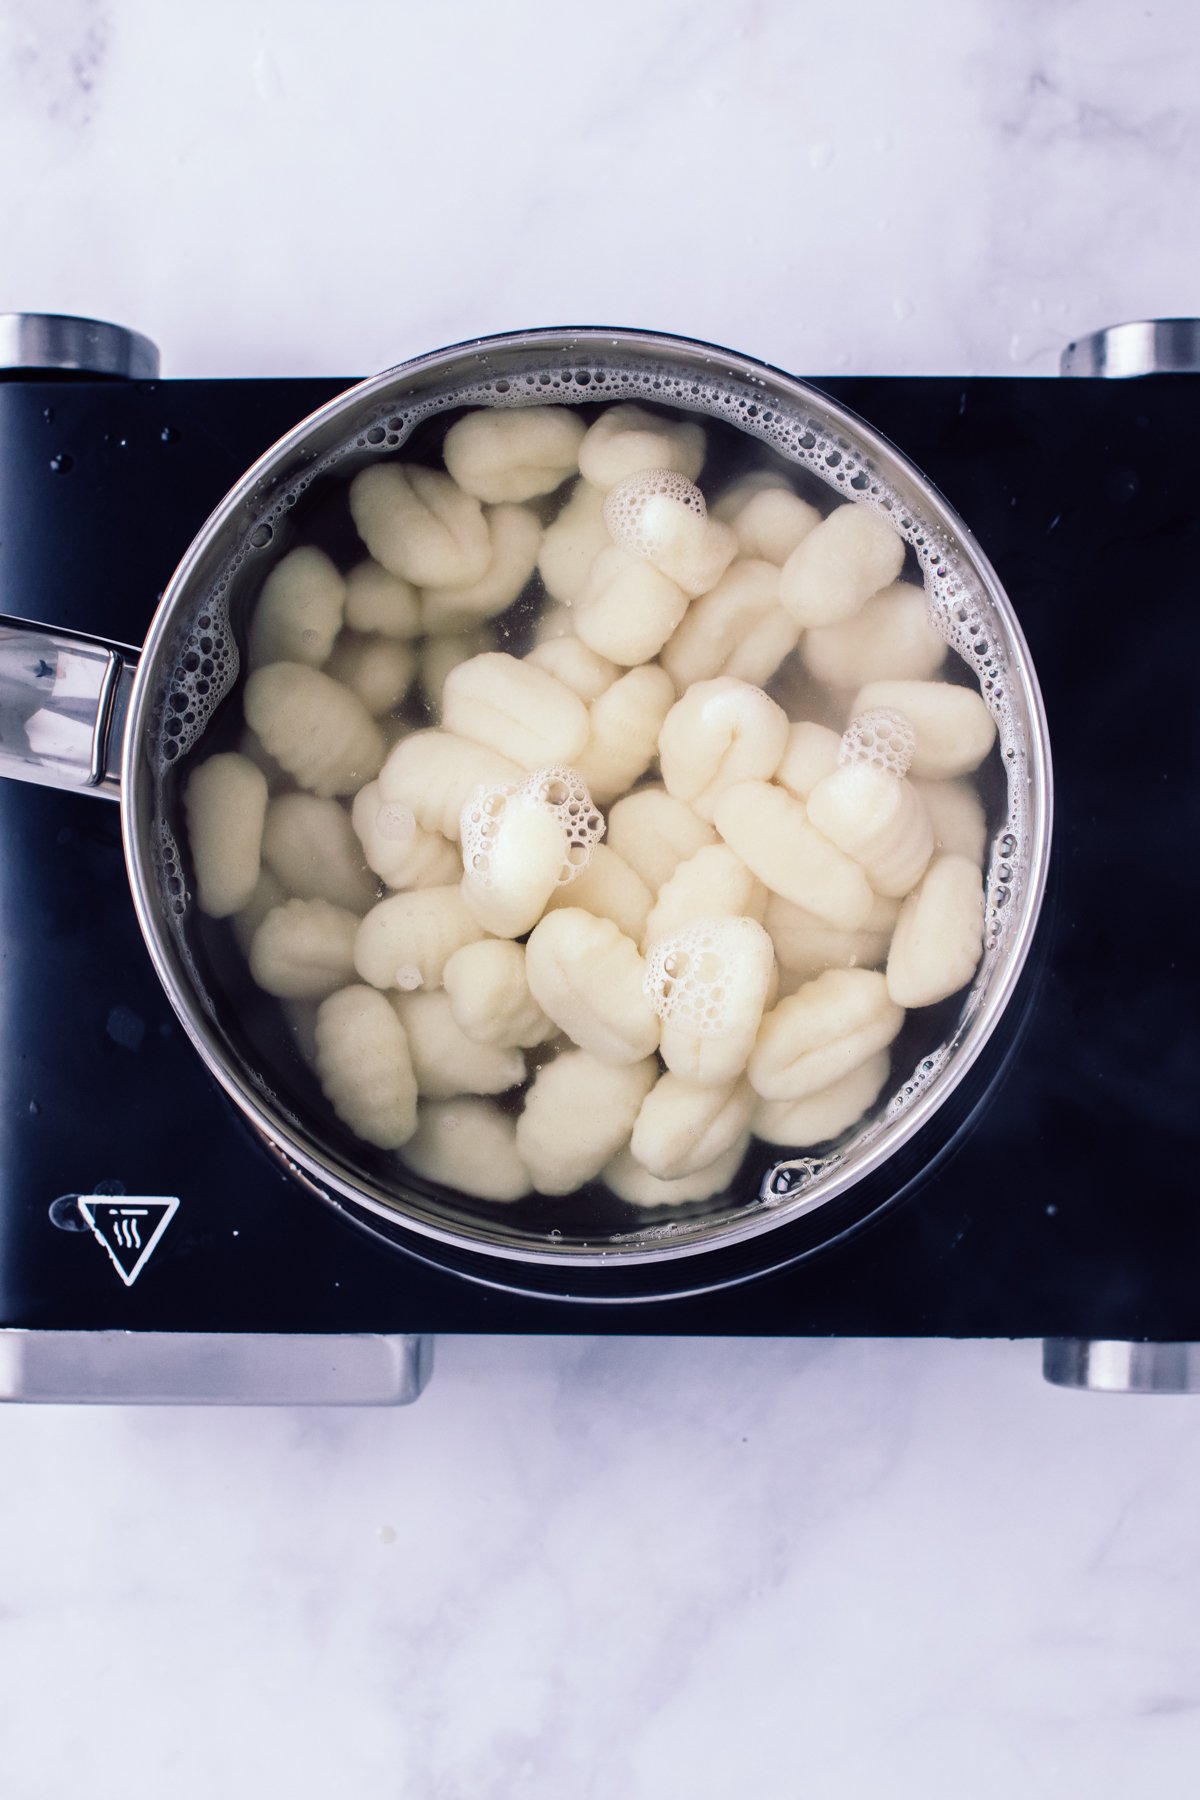 Gnocchi in a pot to boil. 